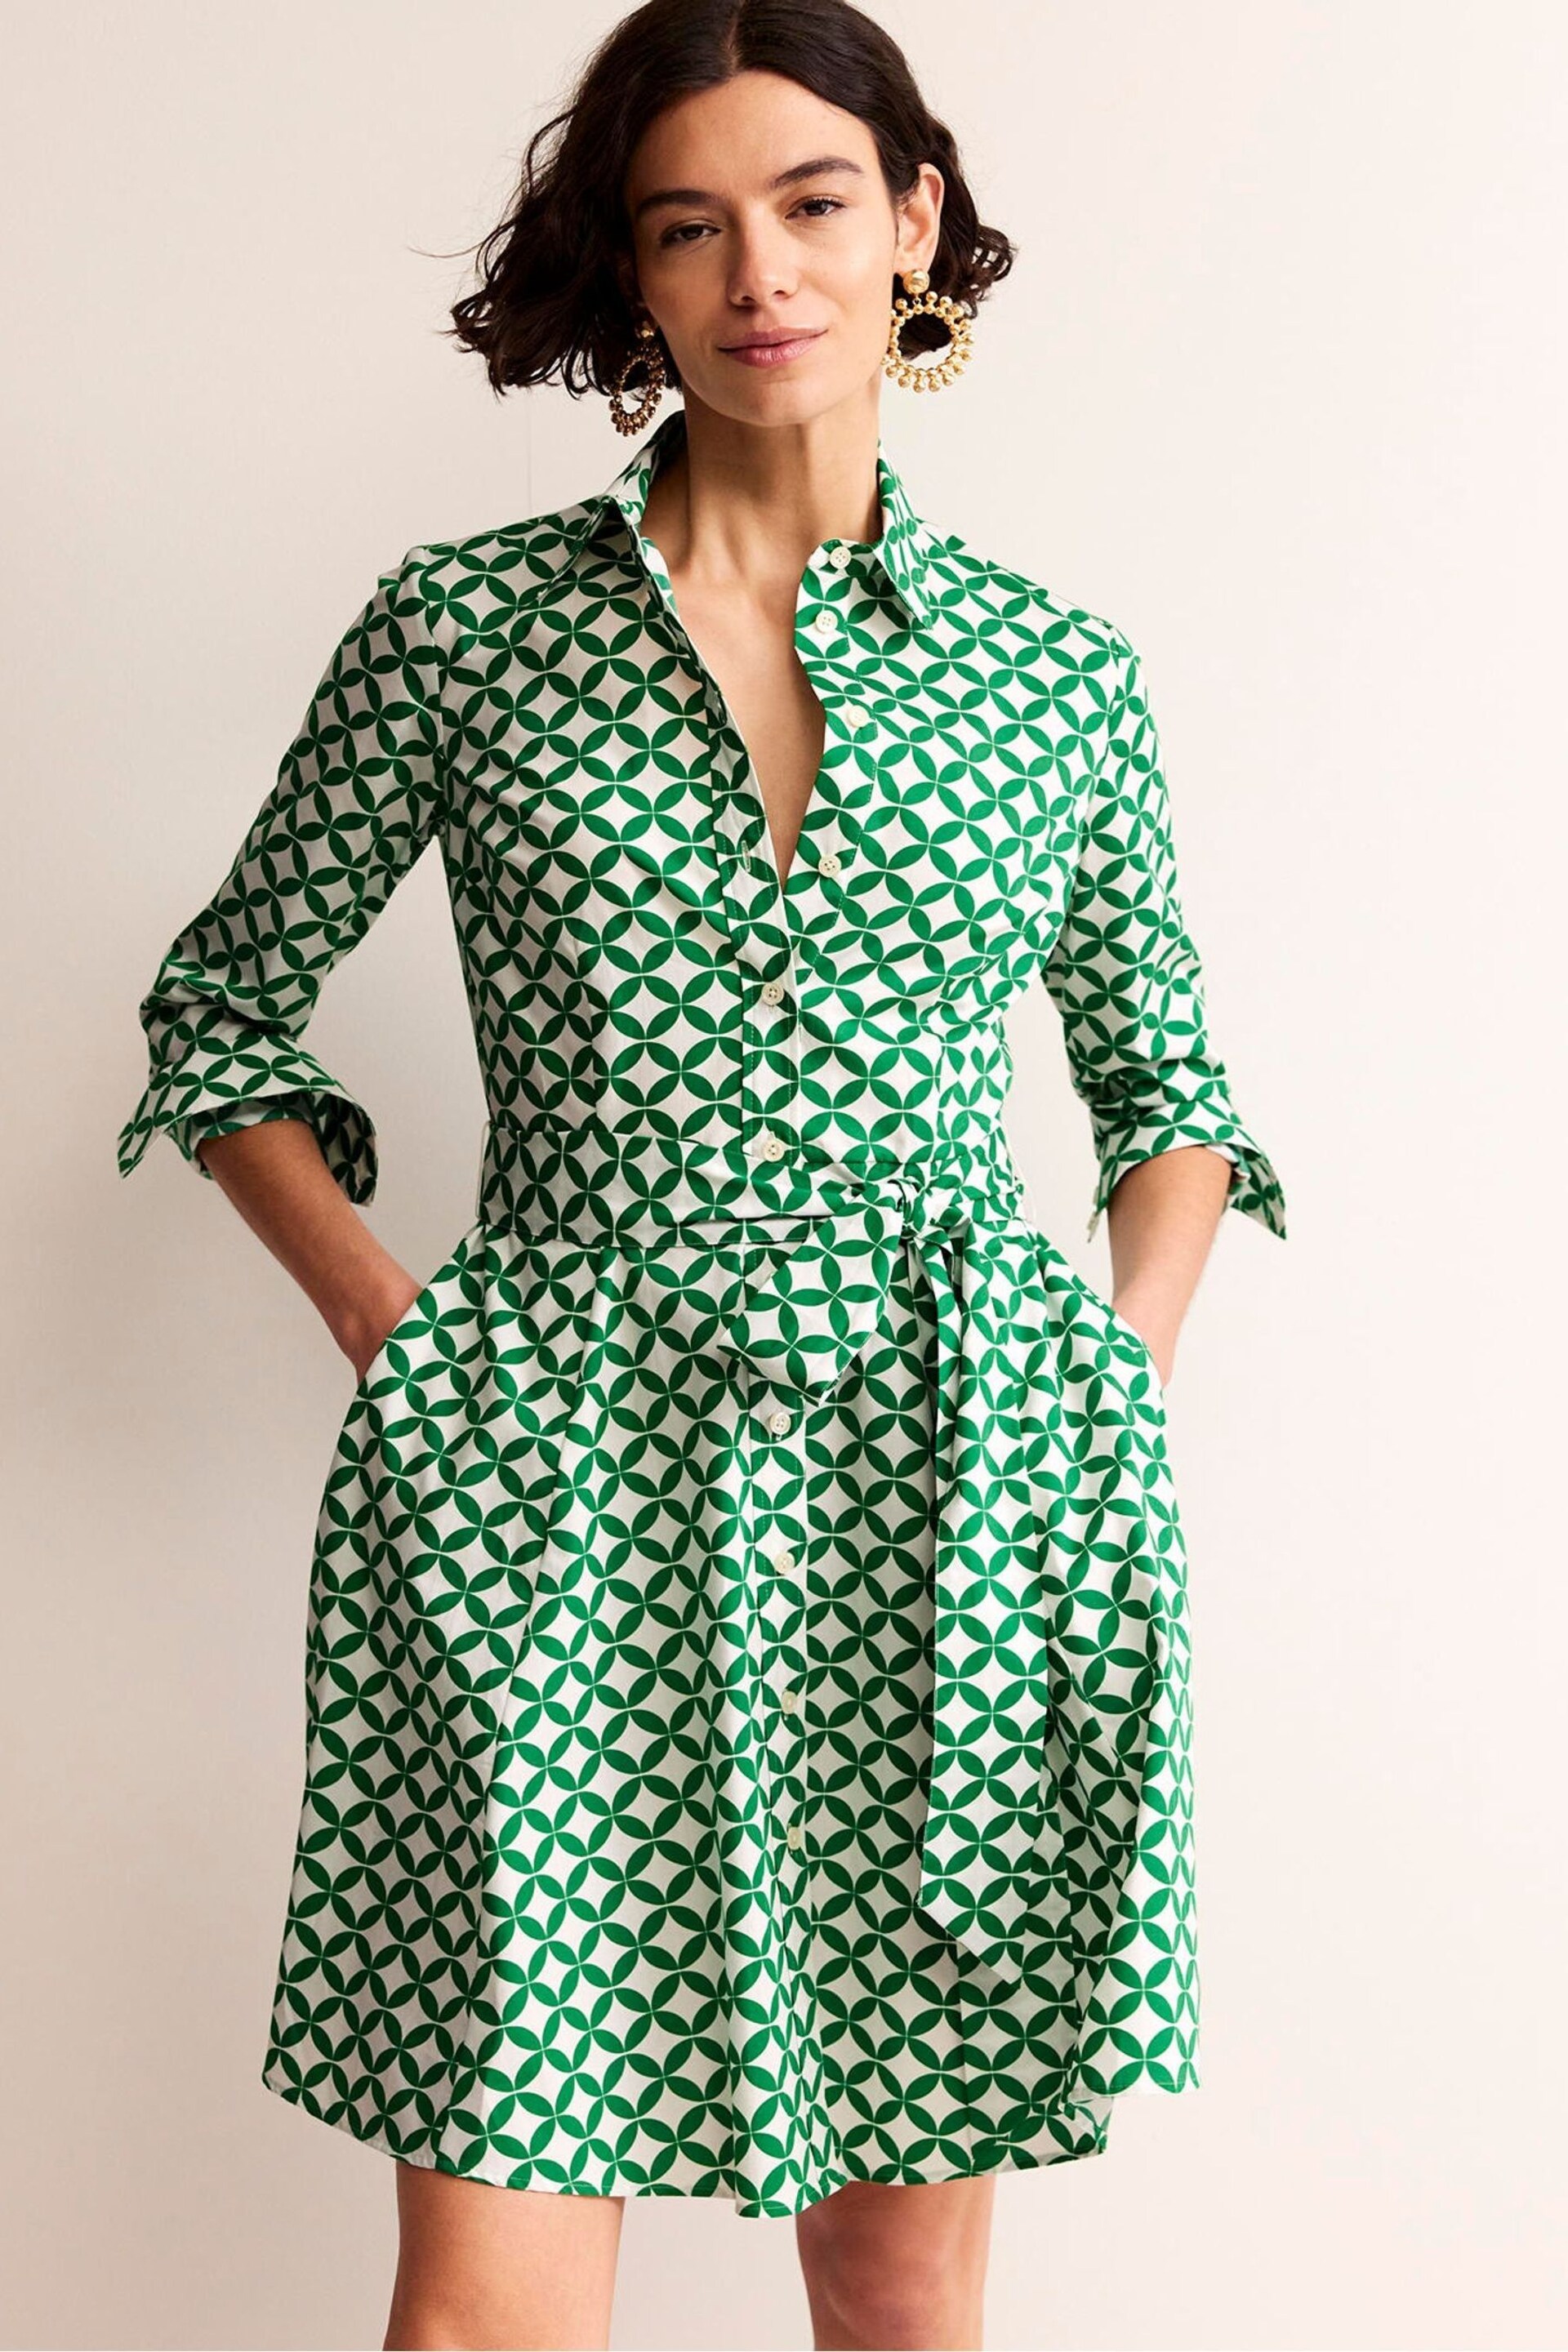 Boden Green Amy Cotton Short Shirt Dress - Image 3 of 5